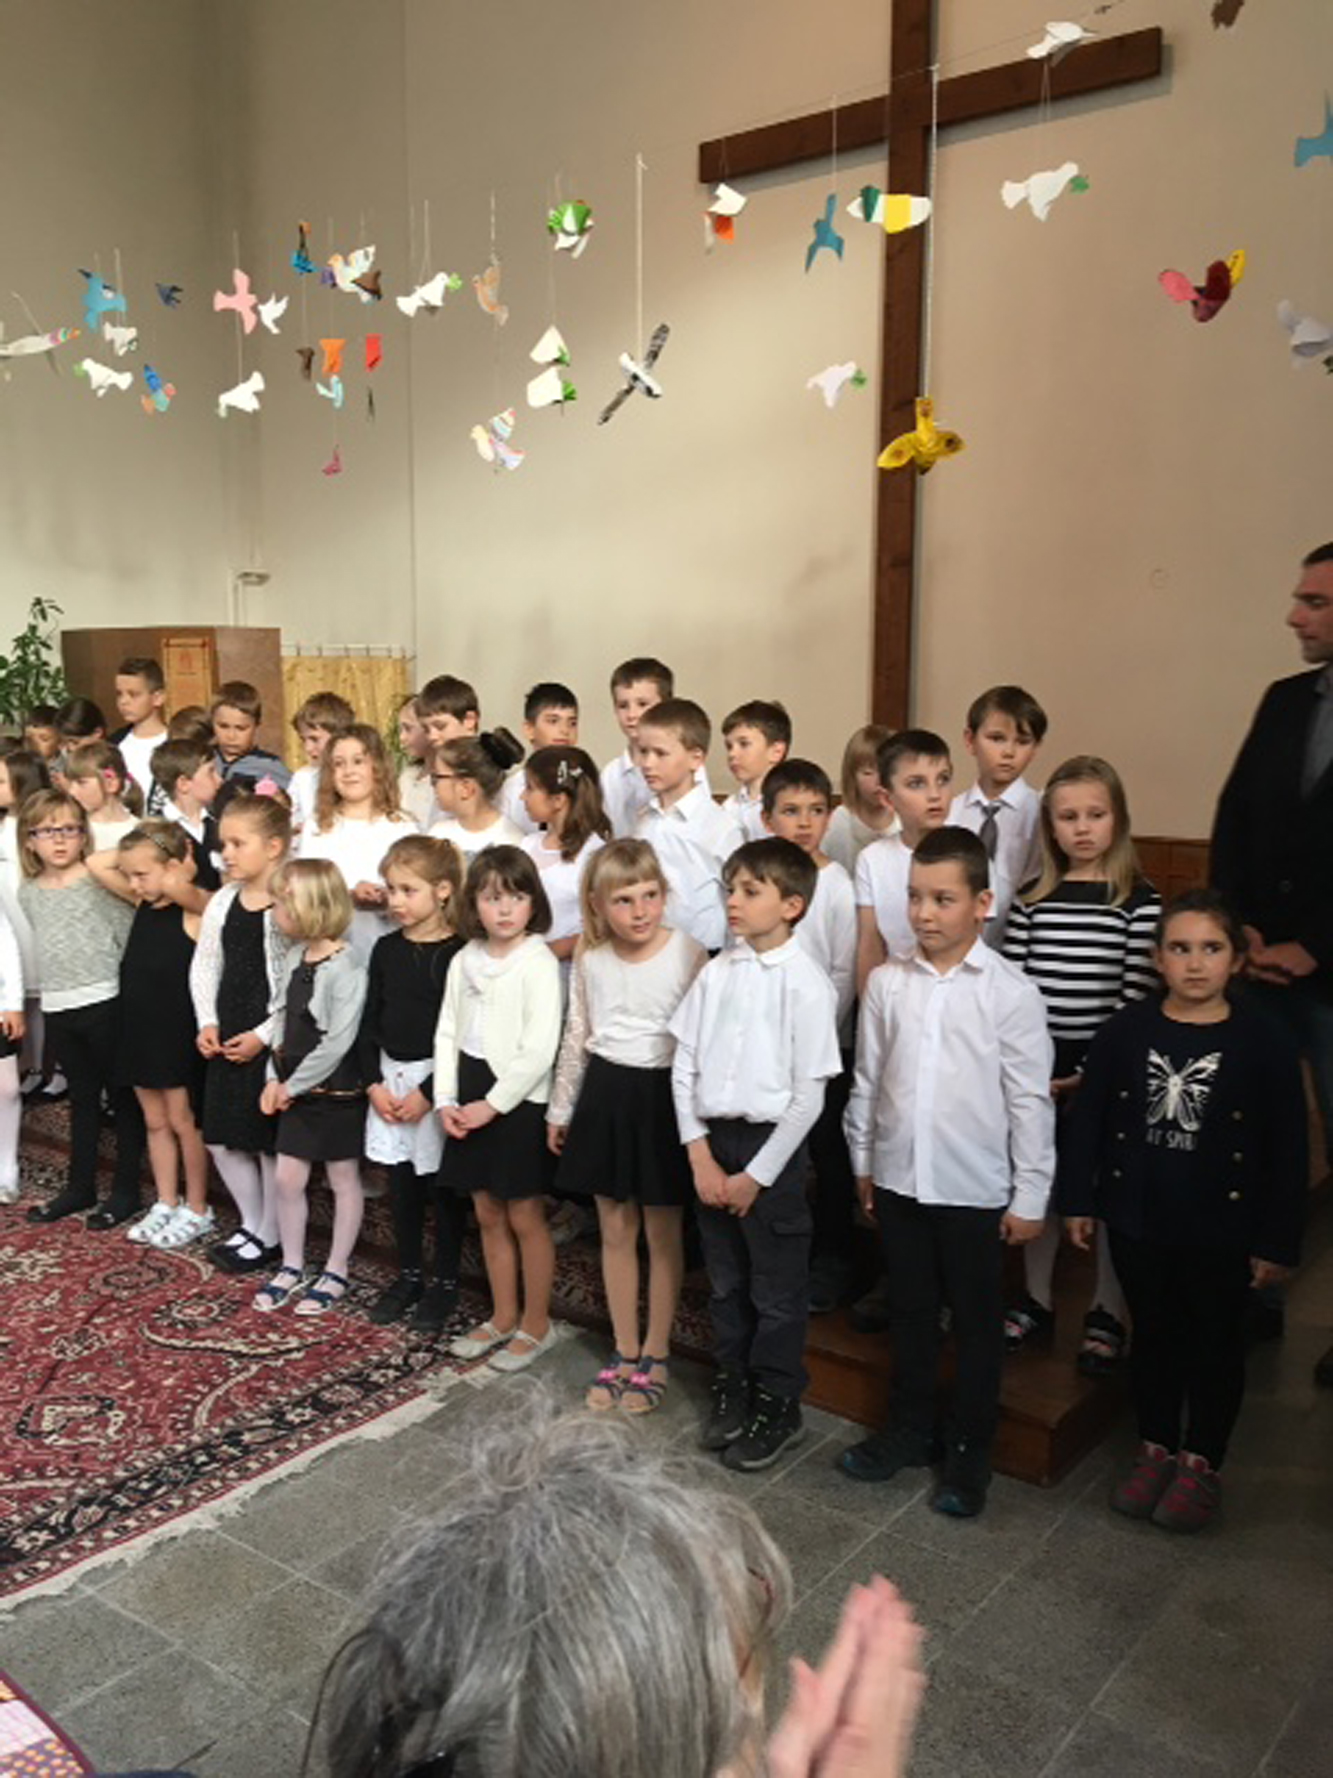 Der Kinderchor „Notičky“ der Kunstschule Klattau begleitete die Vernissage gesanglich. Fotos: Maria Wunder. 